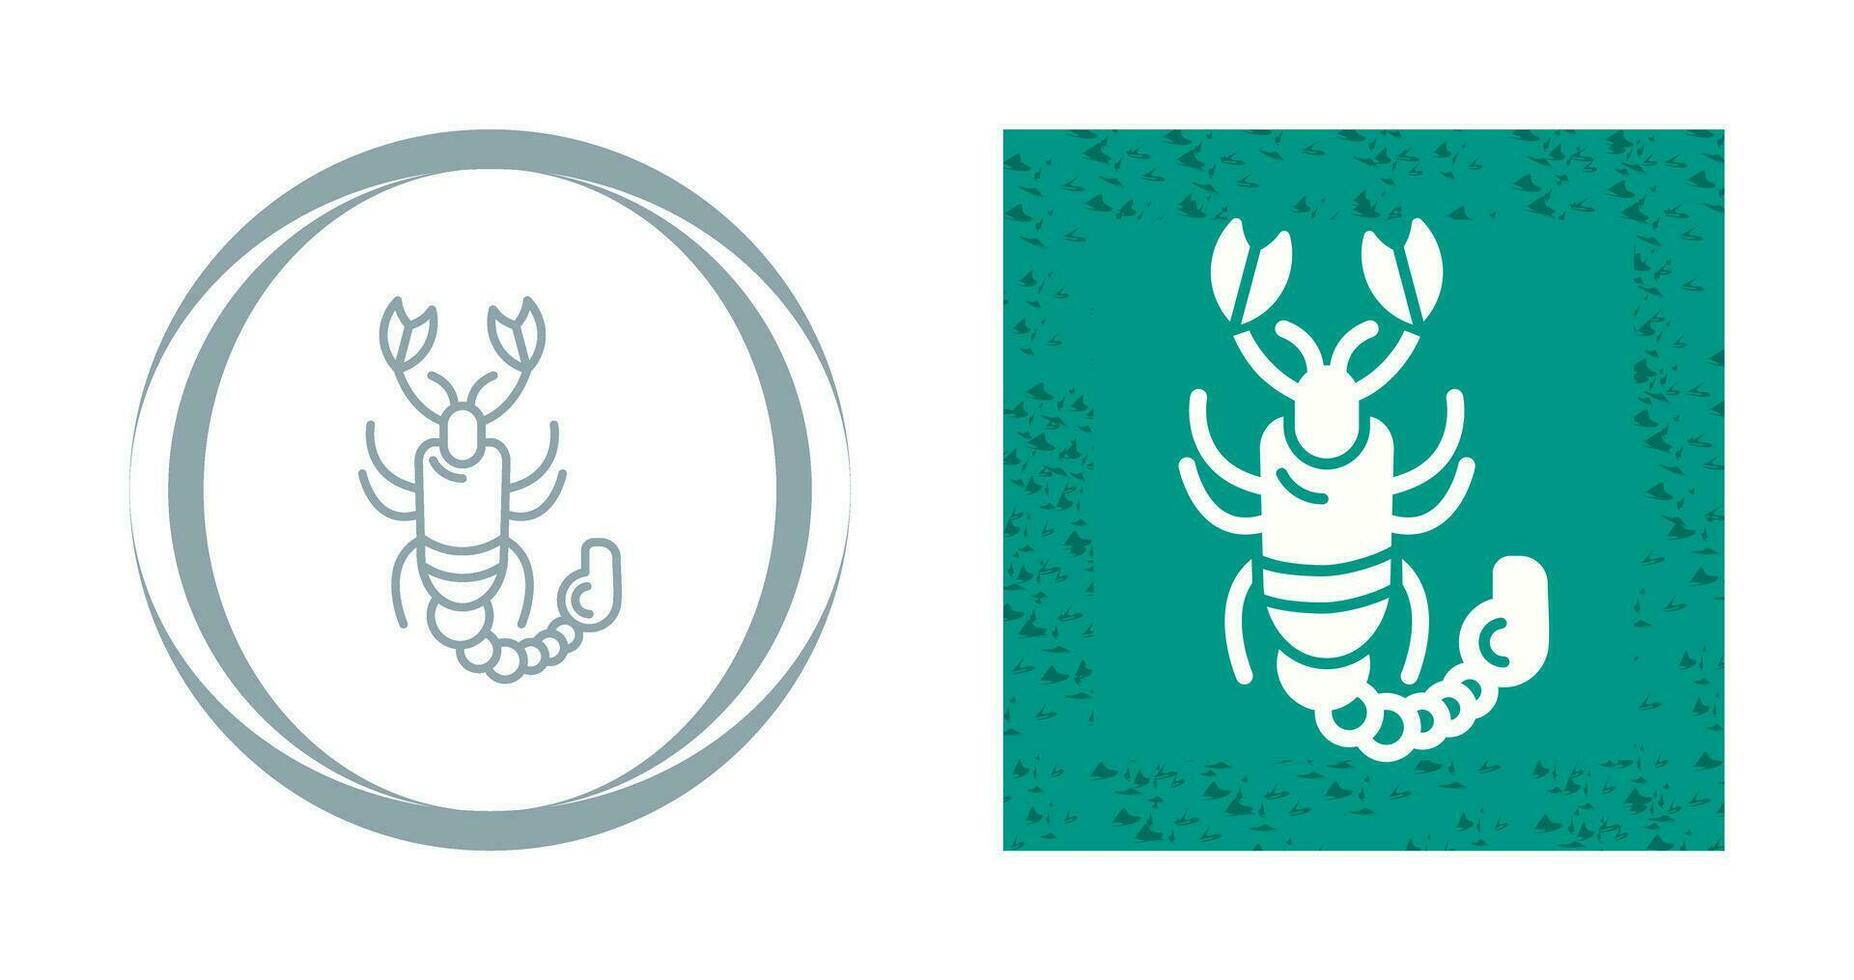 icône de vecteur de scorpion